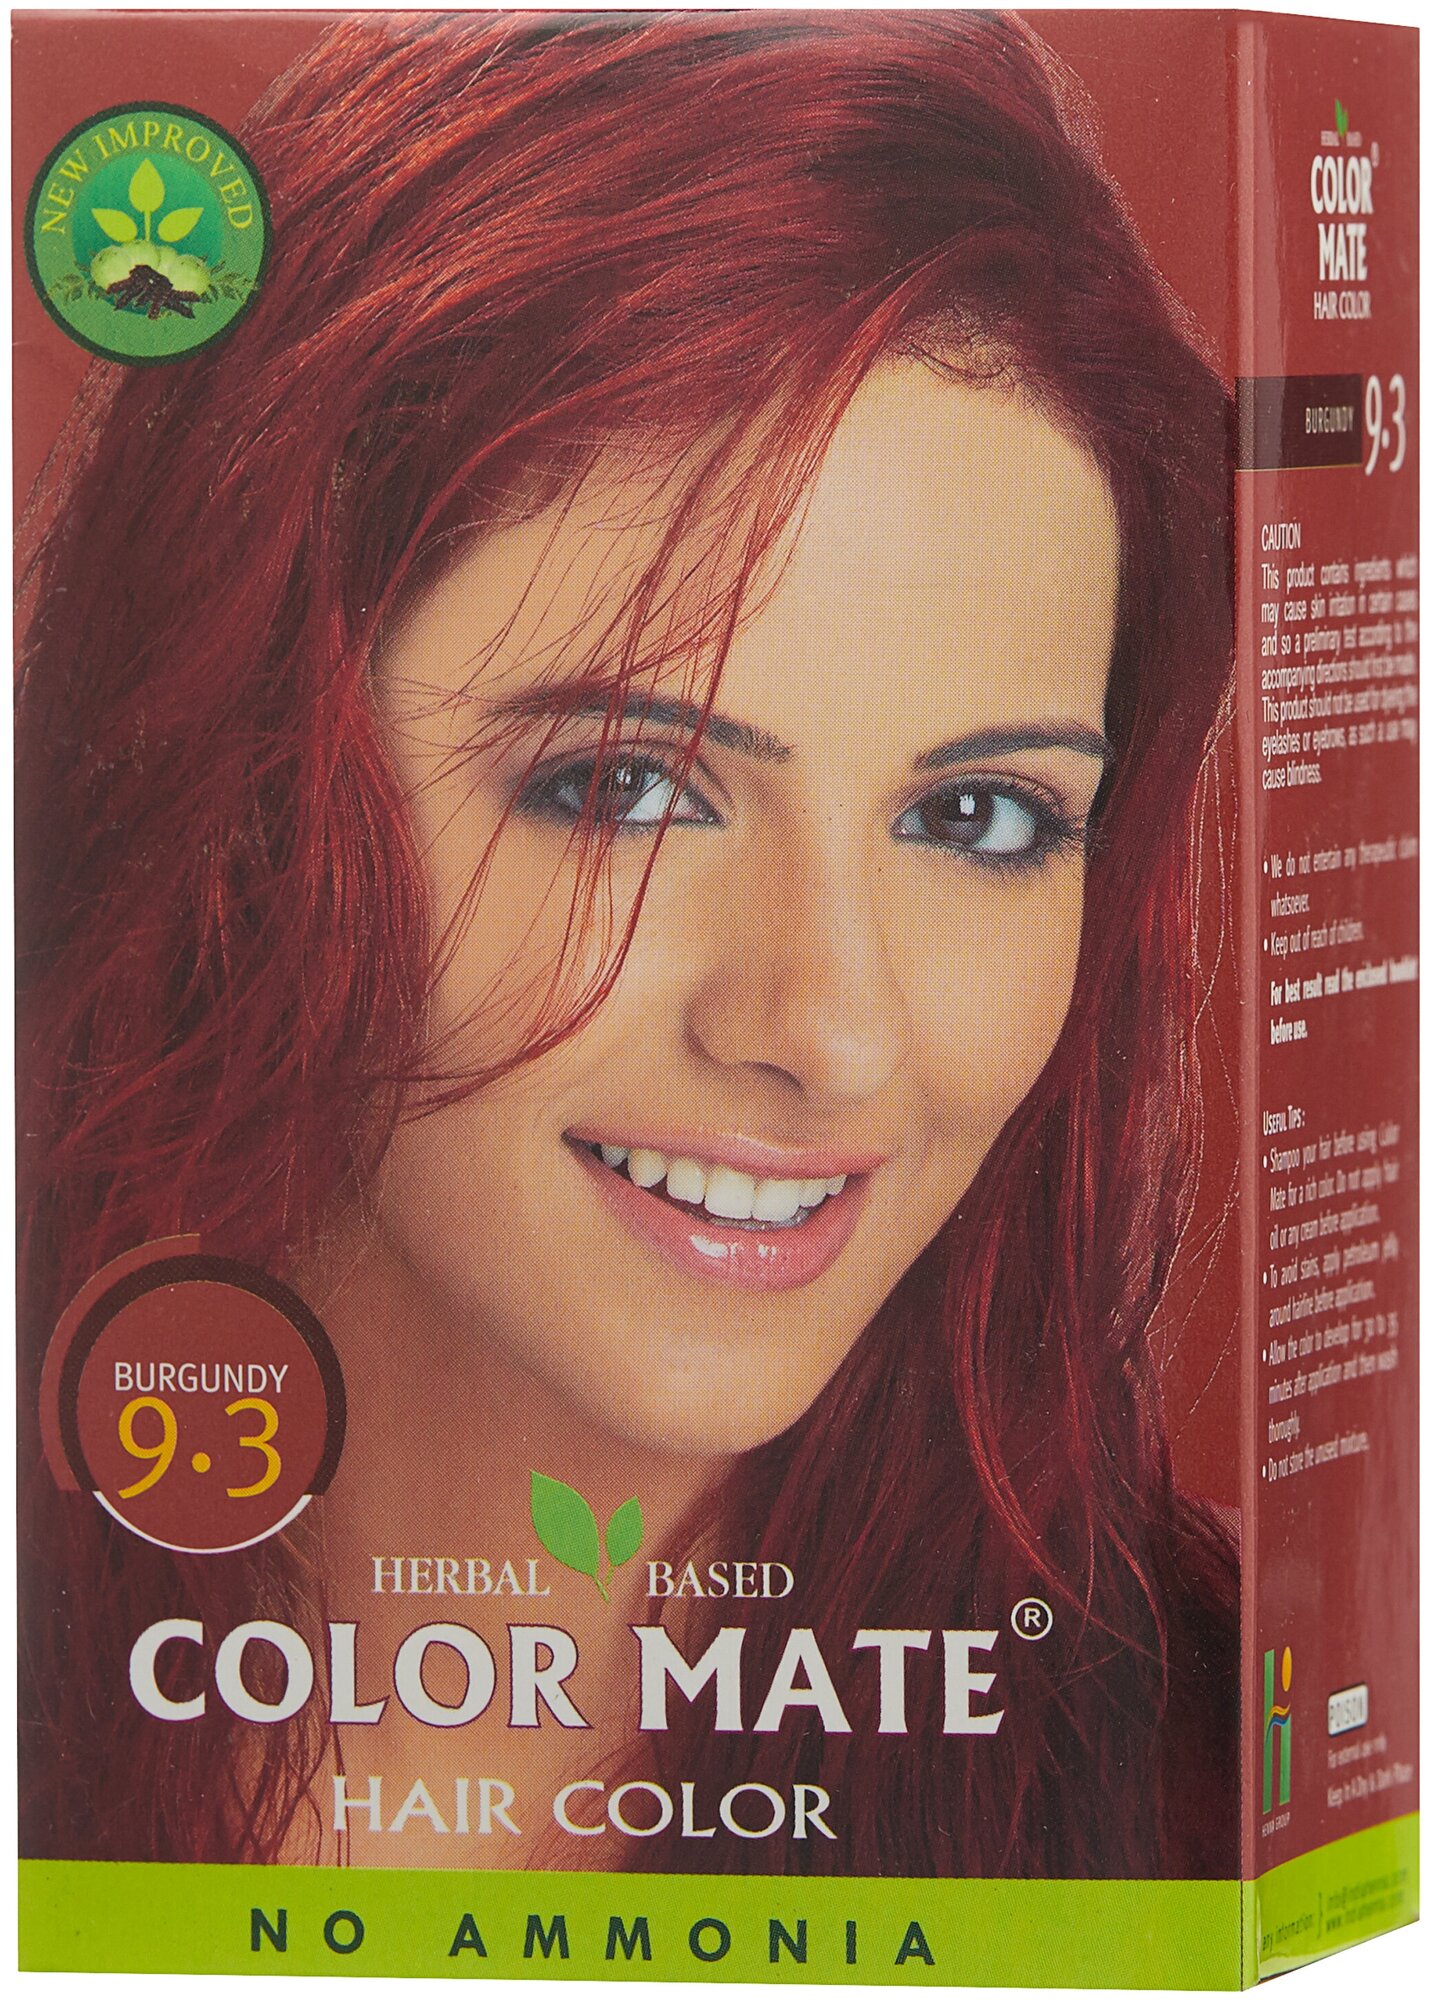 Color Mate Натуральная краска травяная, 9.3 burgundy, 75 г